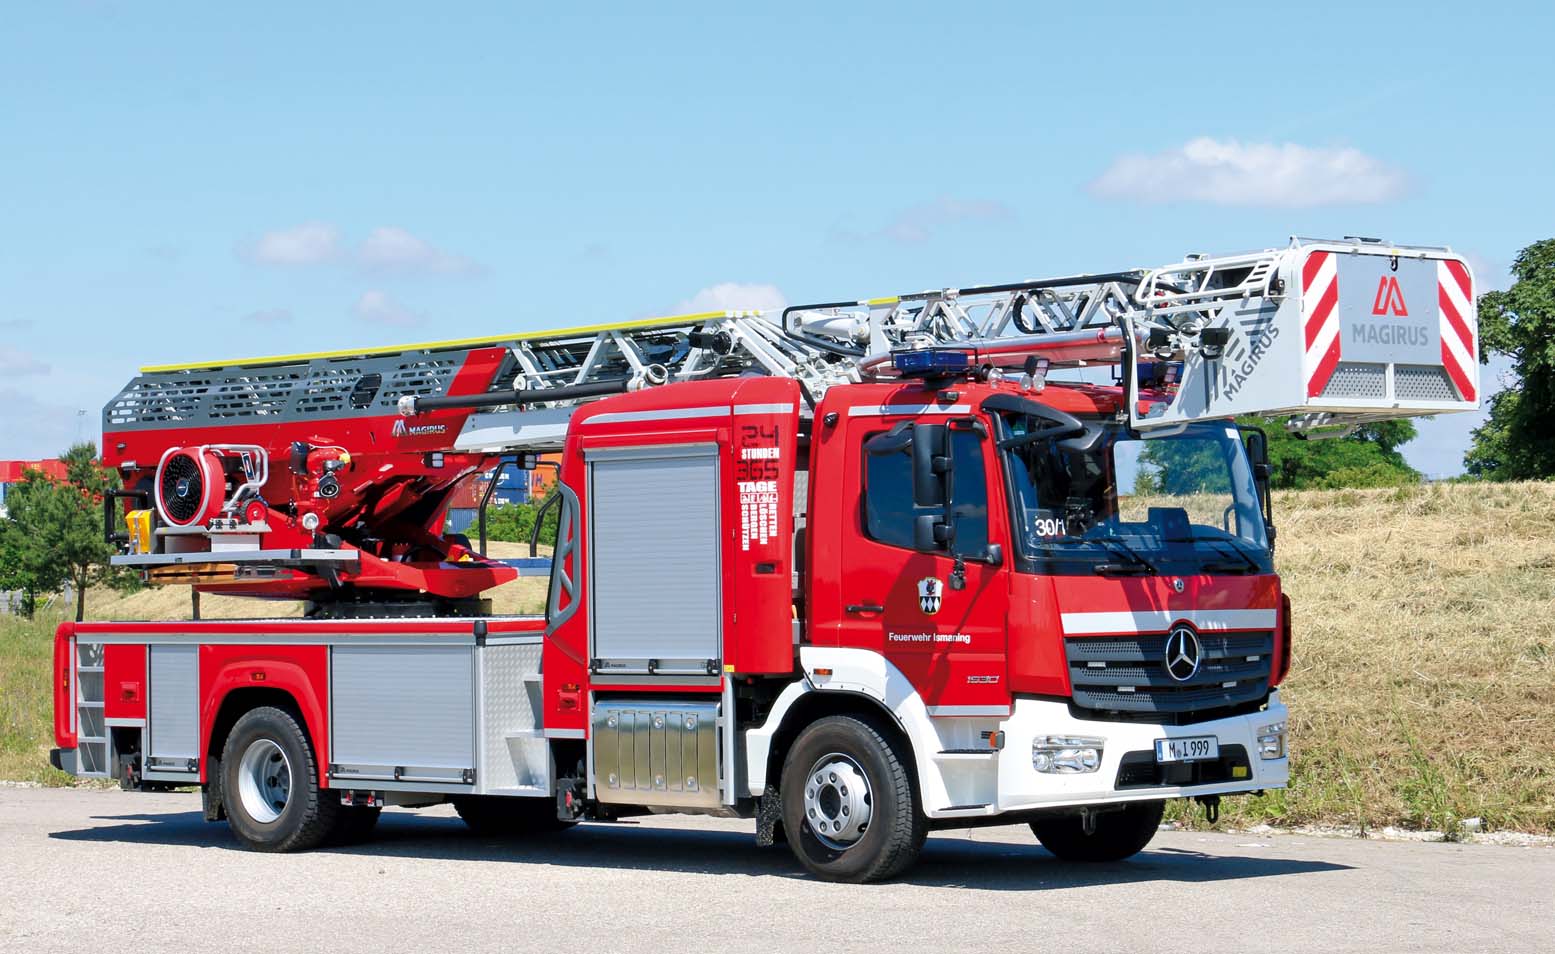 Feuerwehrfahrzeuge im Landkreis München